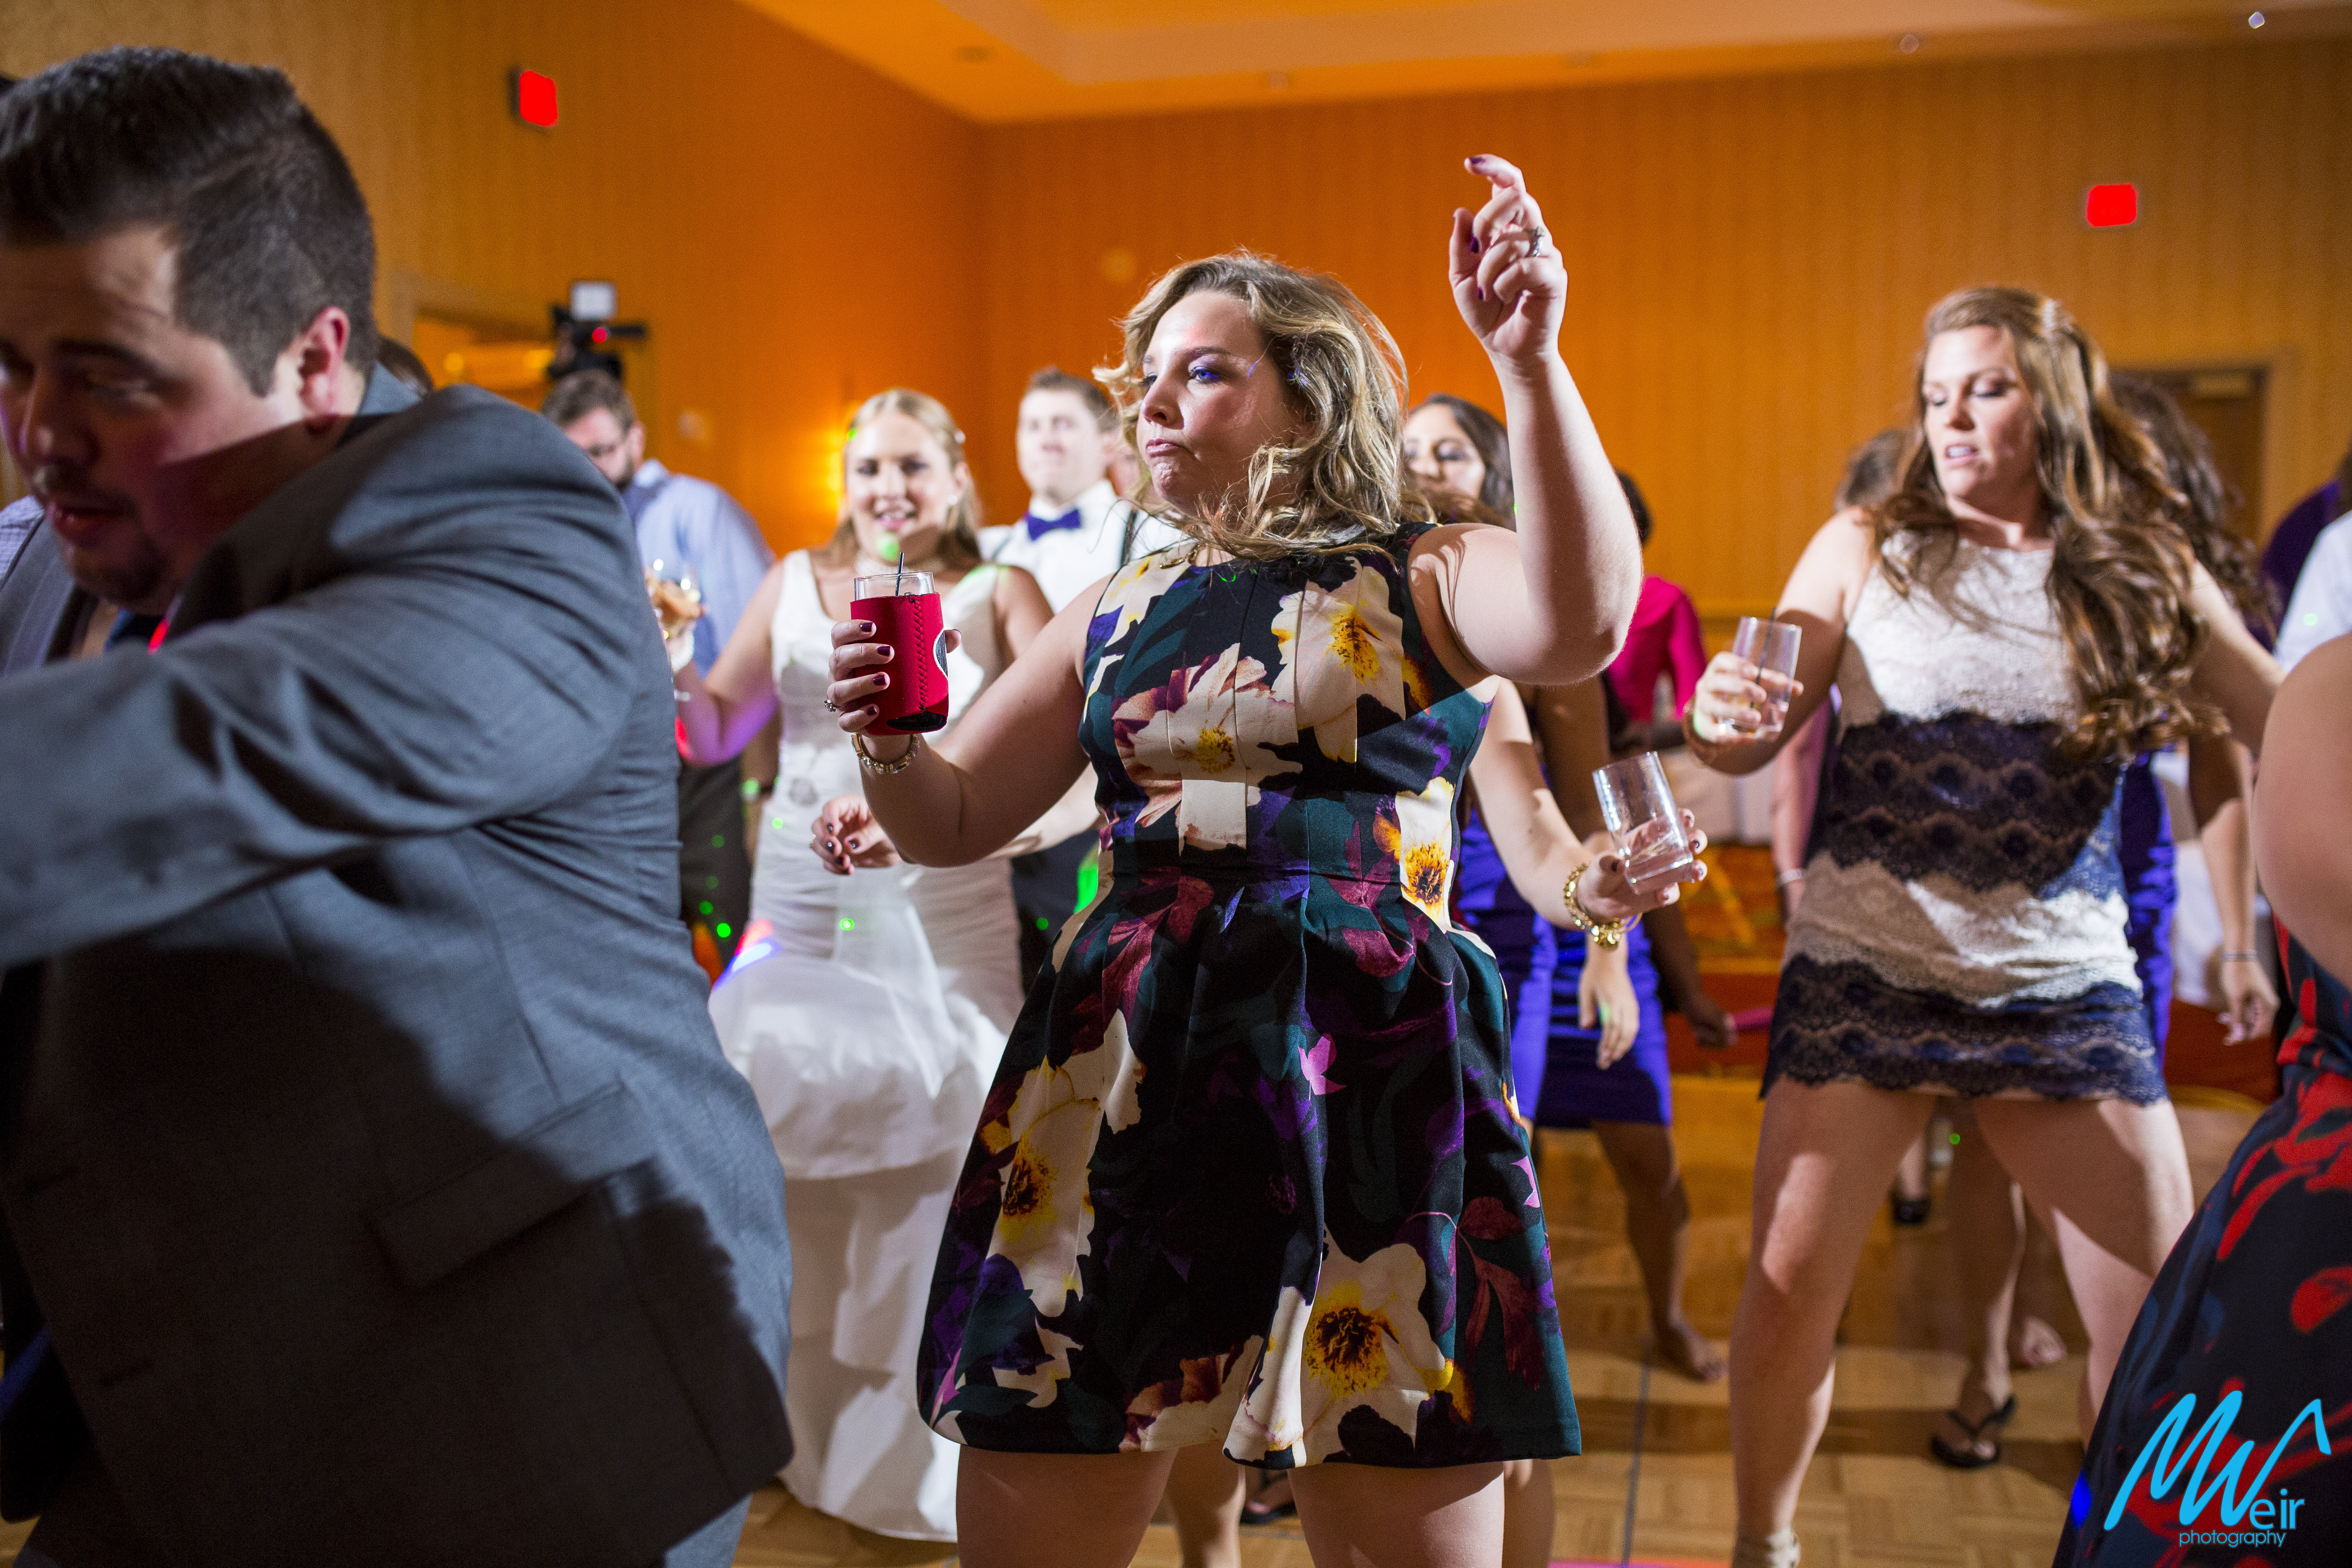 intense dancing during wedding reception